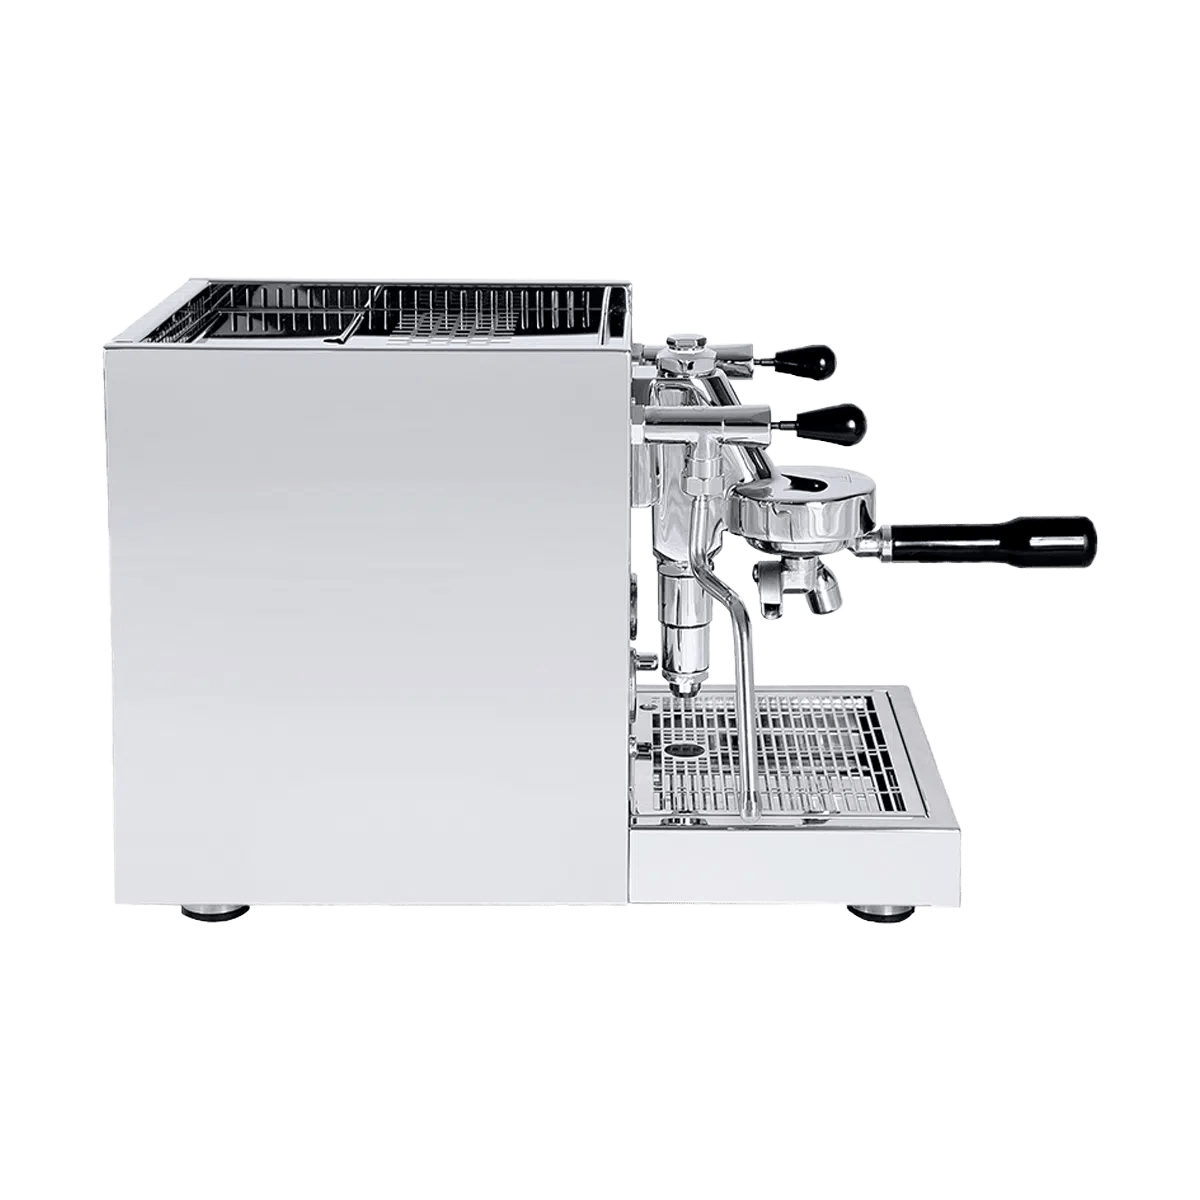 Quick Mill Naz Zweikreiser Espressomaschine - 60beans